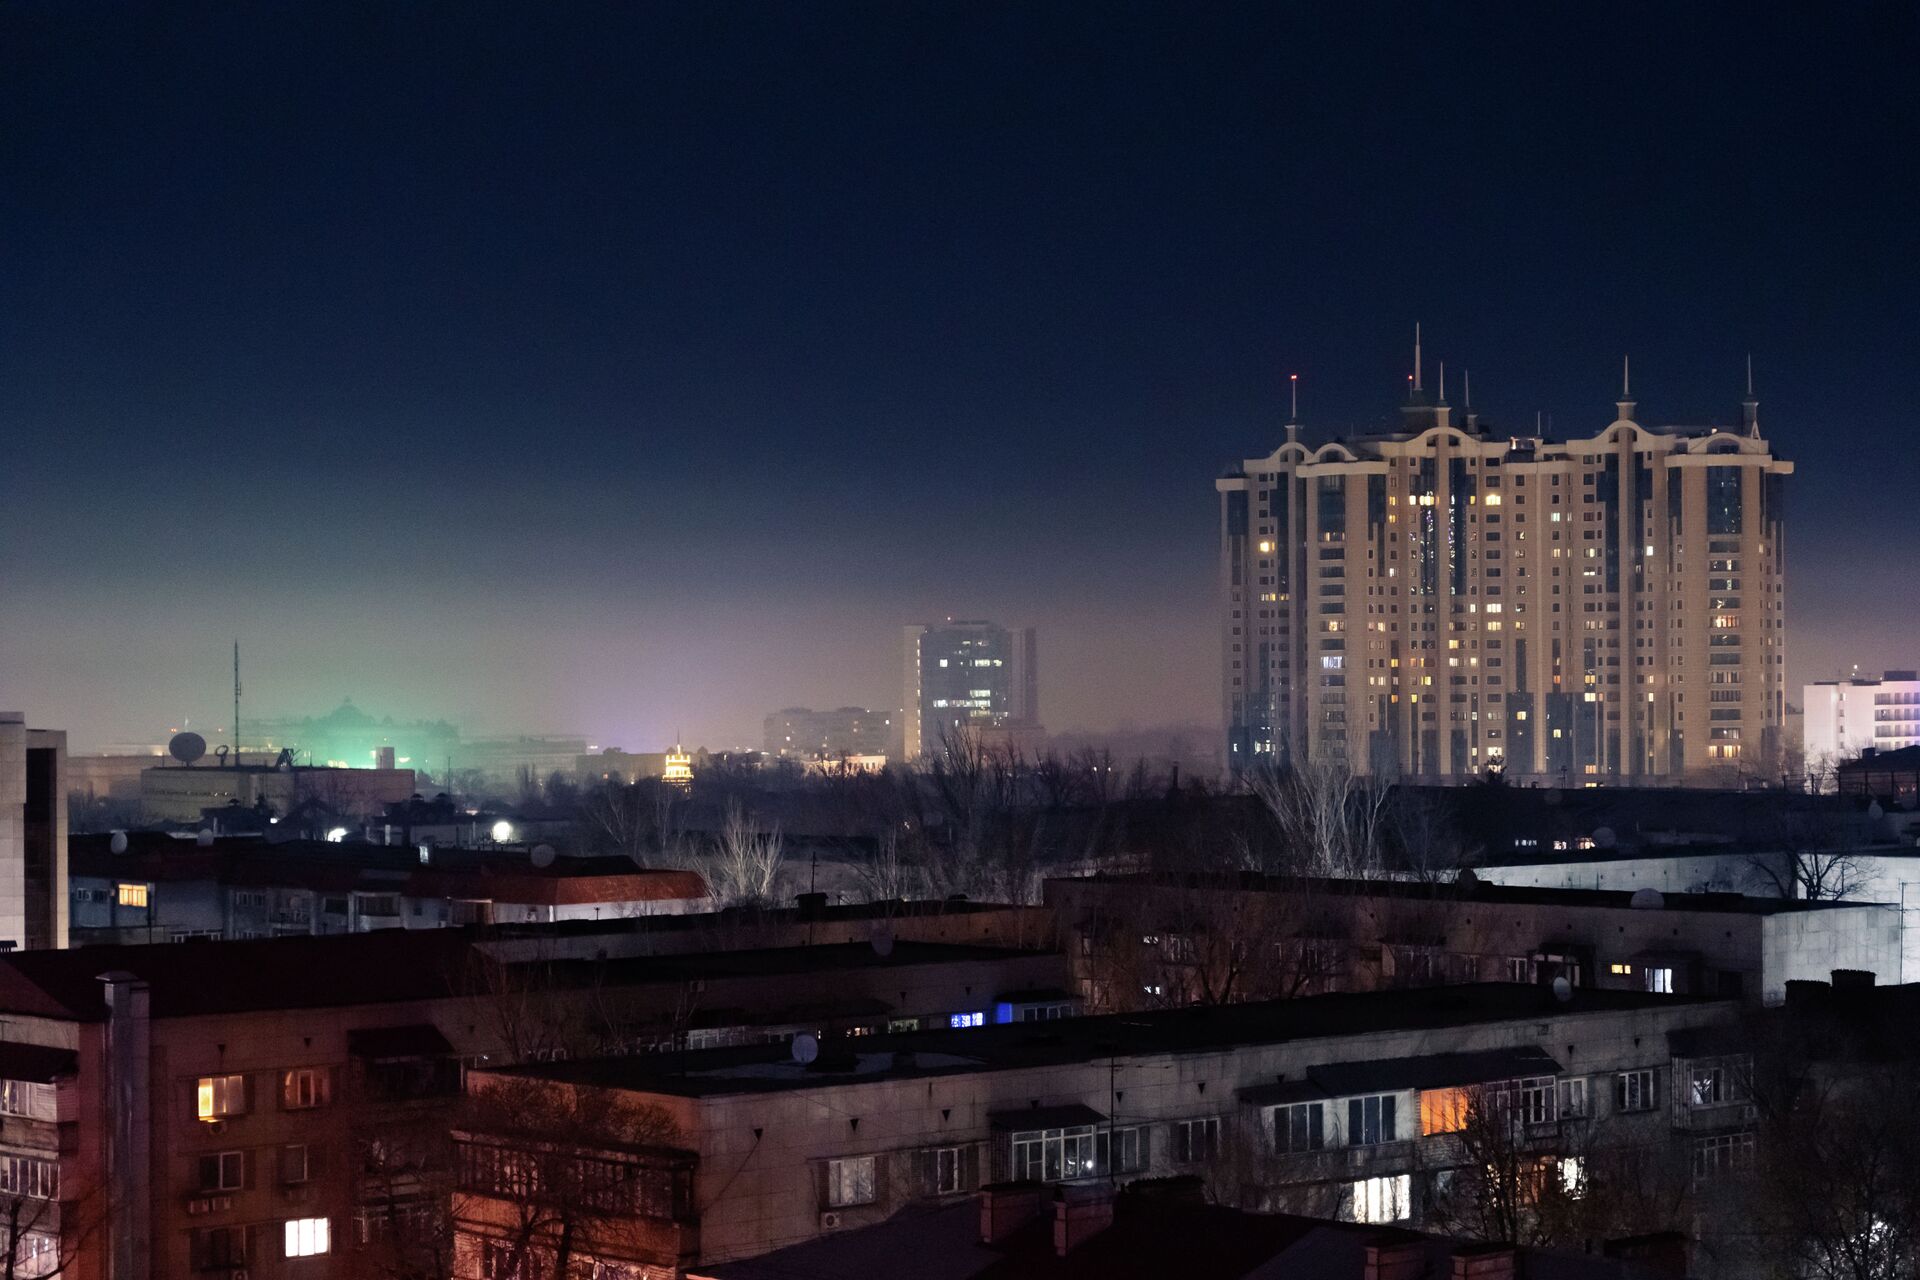 Смог в Алматы видно даже ночью  - Sputnik Казахстан, 1920, 09.02.2021